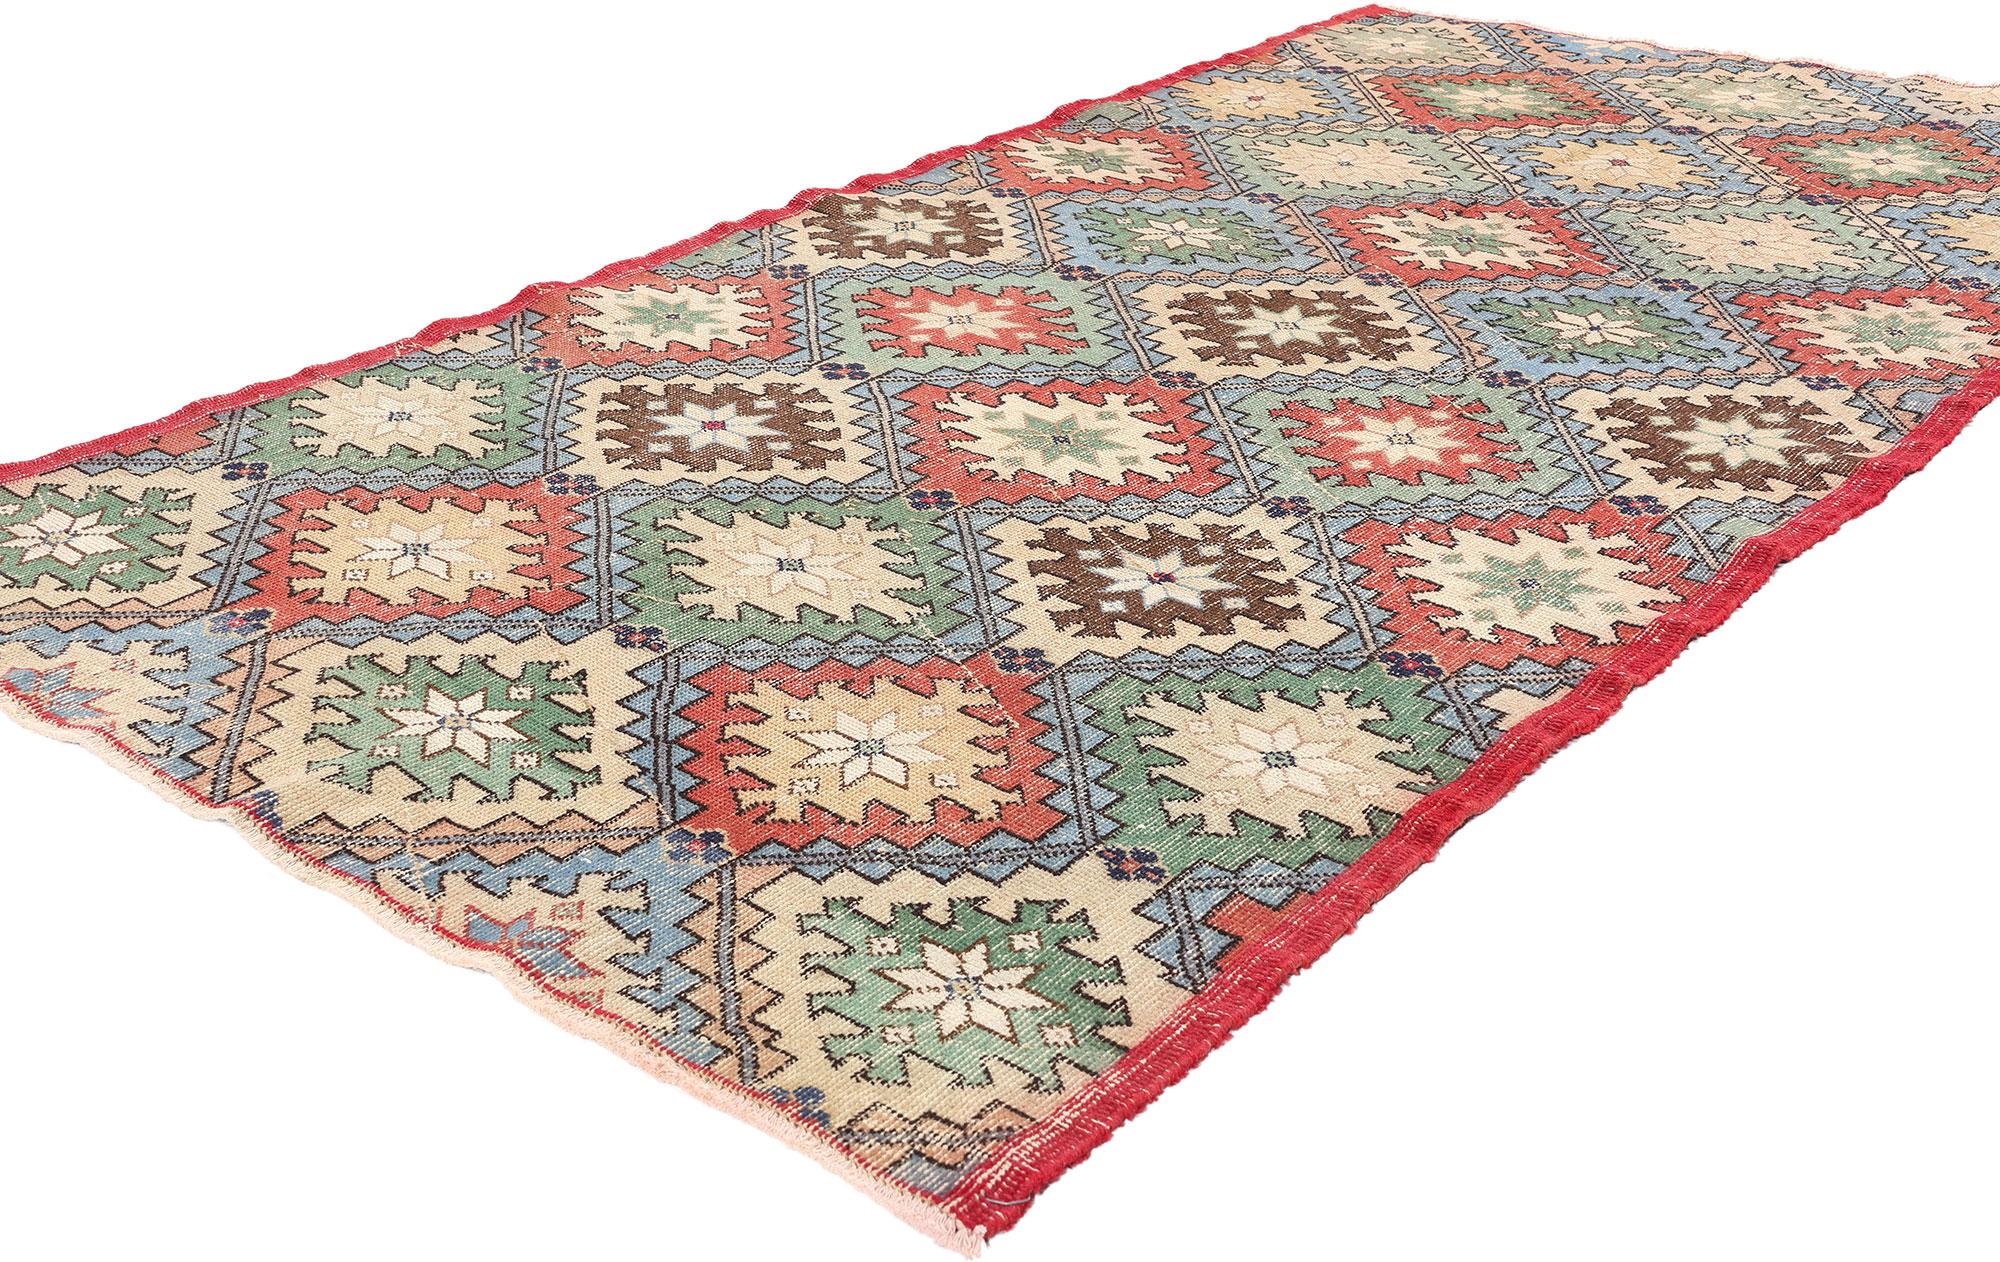 51996 Türkischer Sivas-Teppich im Vintage-Stil, 04'02 x 07'07. Die aus Sivas in Zentralanatolien (Türkei) stammenden türkischen Sivas-Teppiche werden absichtlich gealtert, um eine verwitterte Ästhetik zu erzielen. Diese Sivas-Teppiche weisen